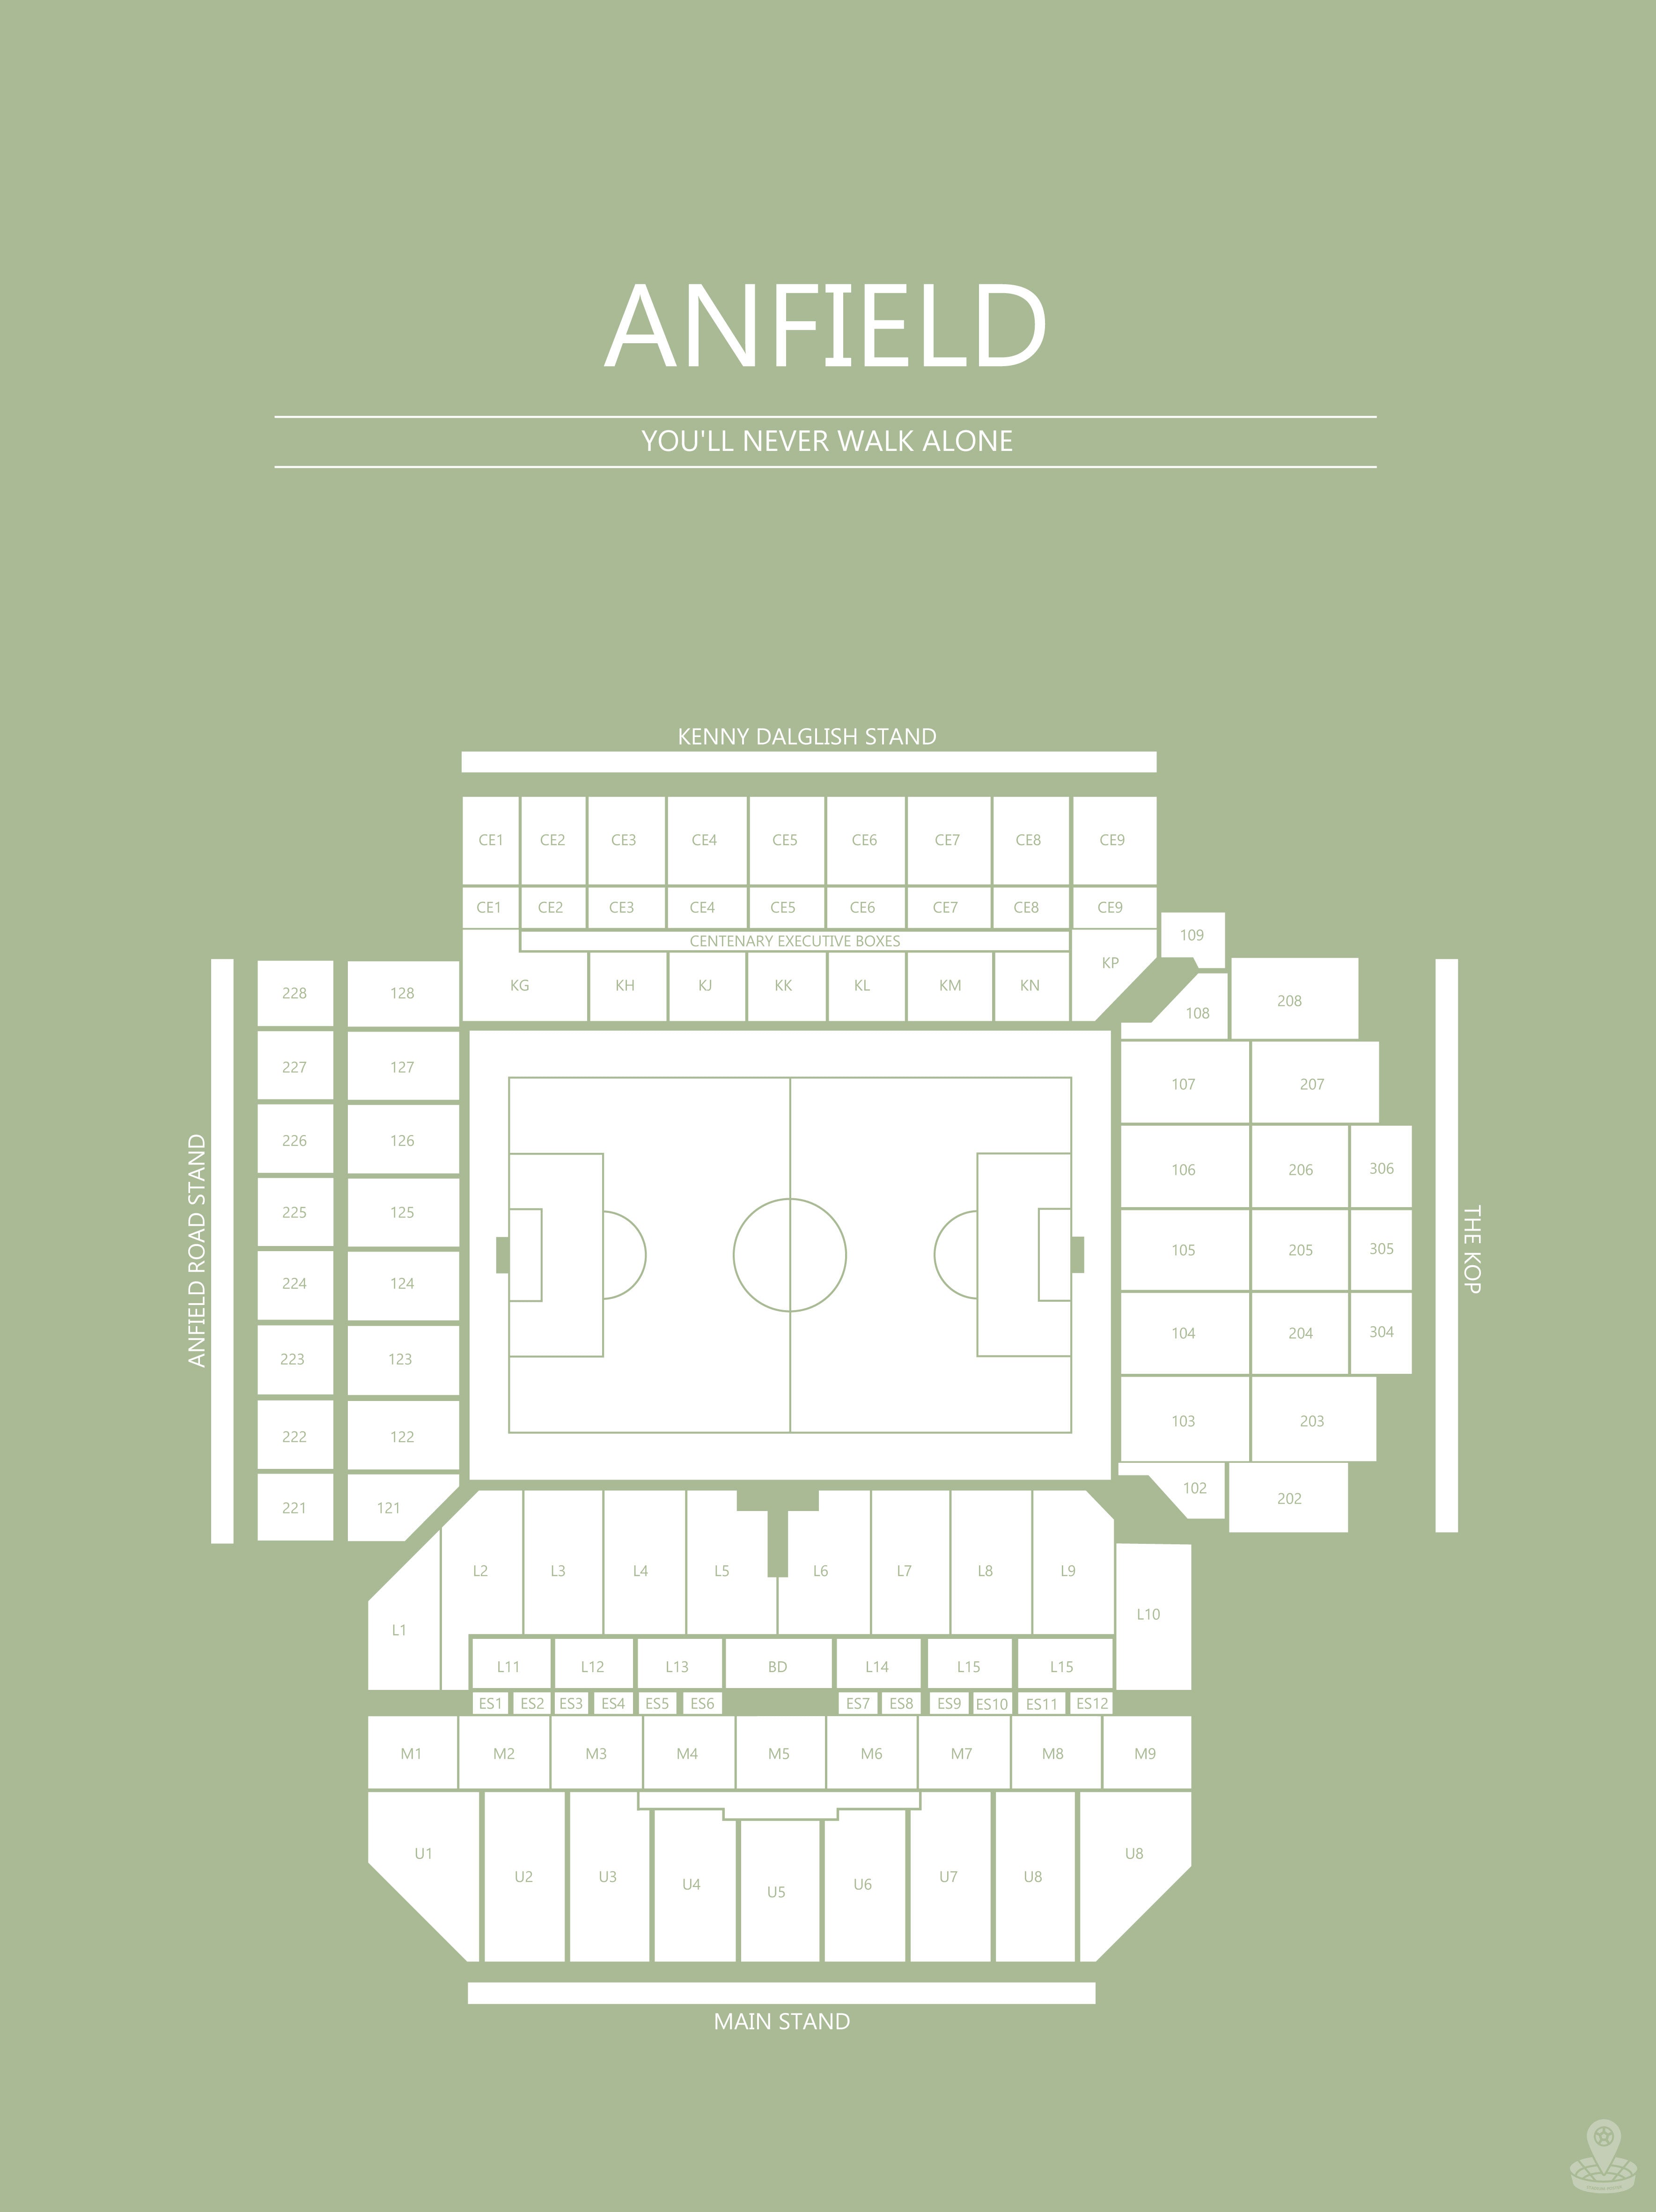 Fodbold plakat Liverpool Anfield stadium i lysegrøn